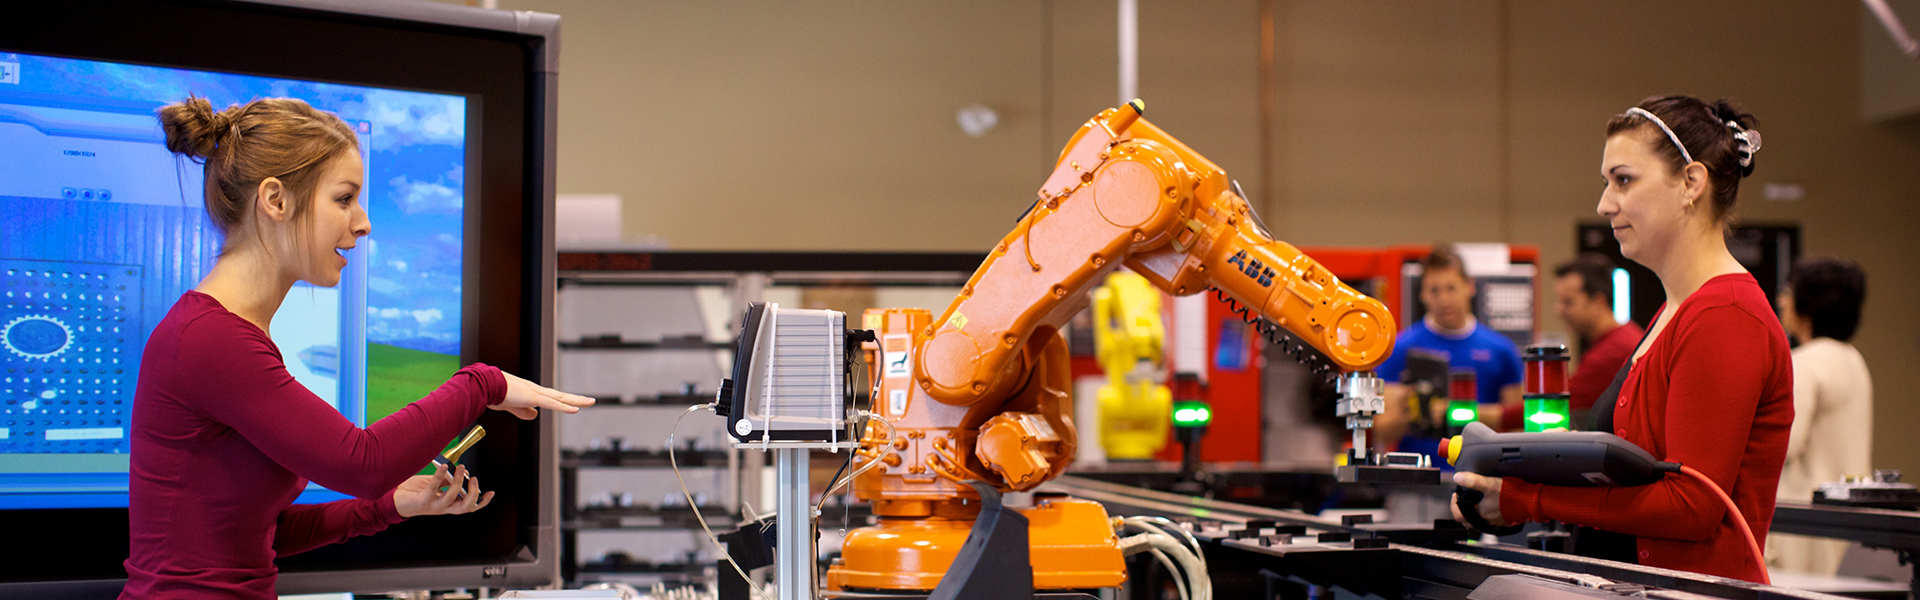 Étudiante manipulant un bras robotique automatisé dans un laboratoire du programme technologie de l’électronique industrielle